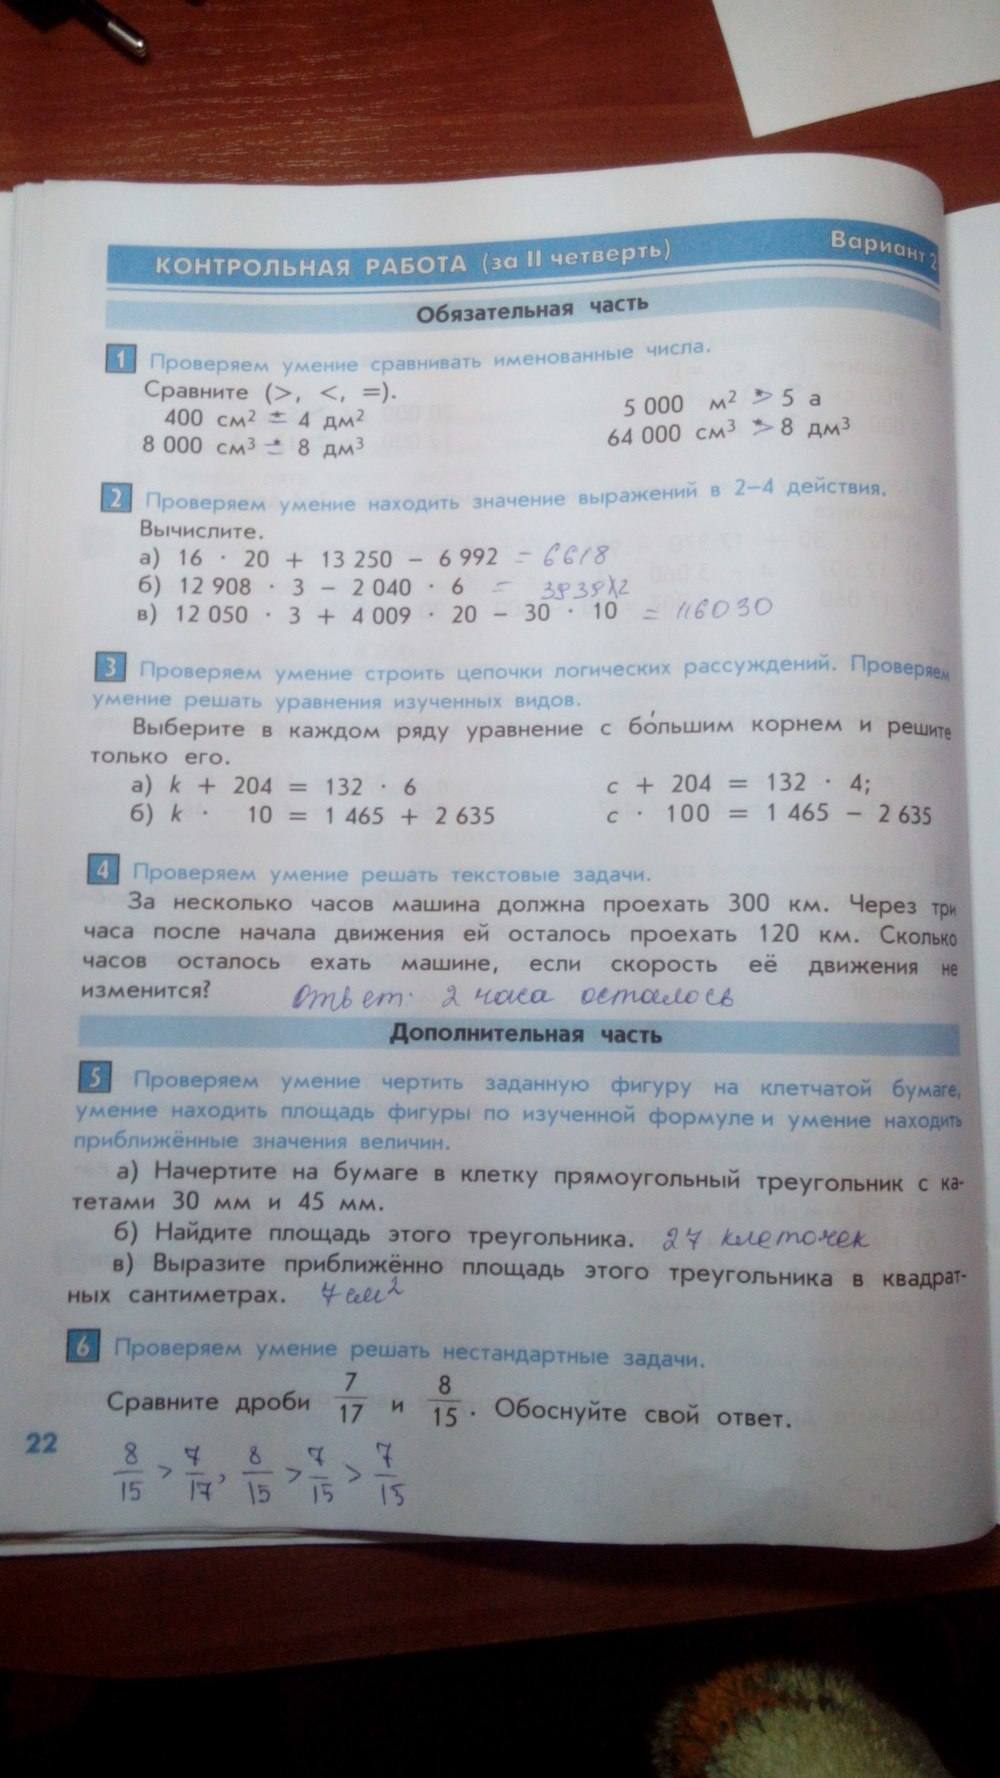 Тесты и контрольные работы, 4 класс, Козлова С. А., Рубин А .Г., 2013, задание: стр. 22